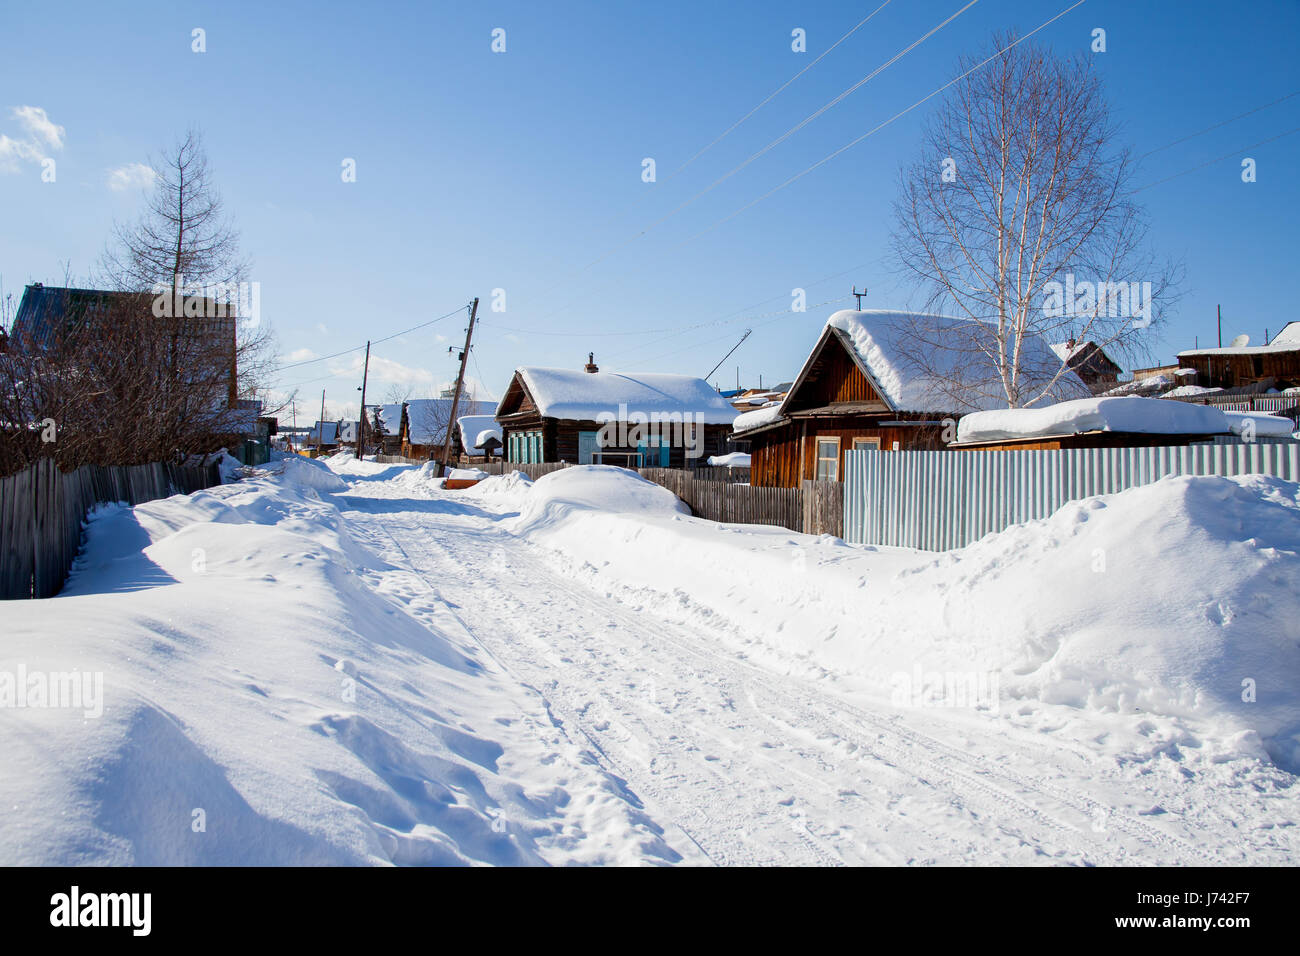 Village a winter sunny day, Sverdlovsk area, Russia Stock Photo